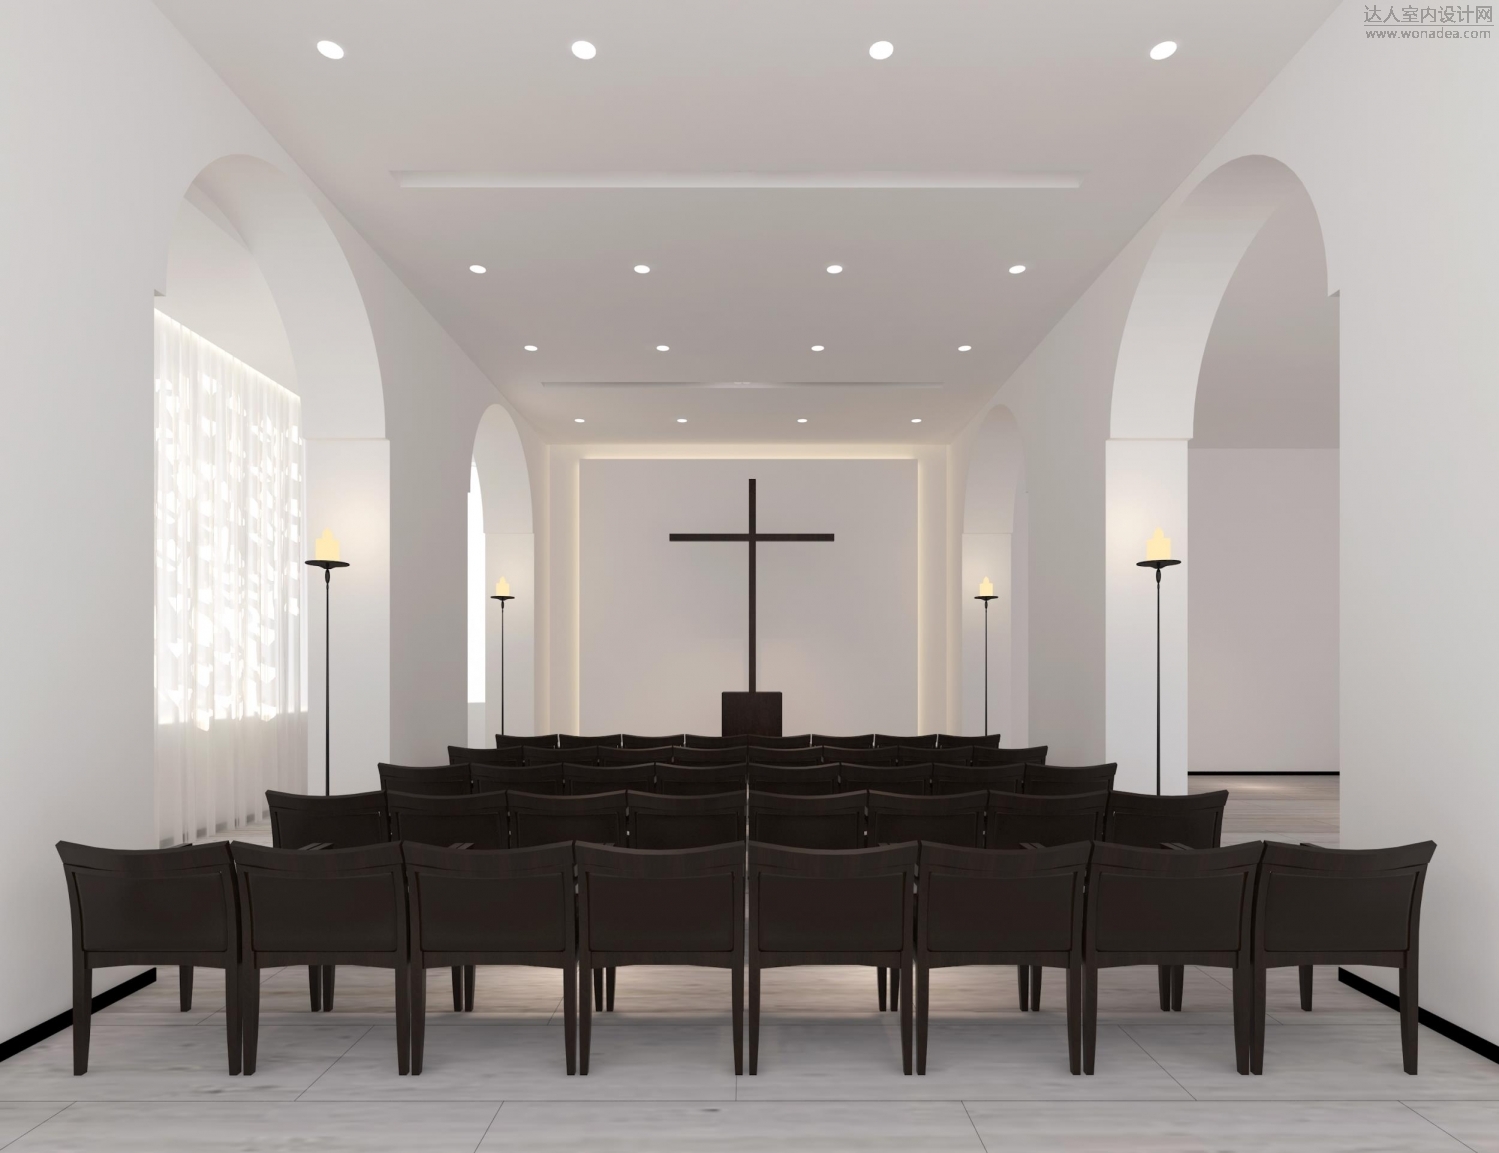 69 概念方案 rbd阮斌设计——基督教和平教堂 主堂围绕主堂讲台选用